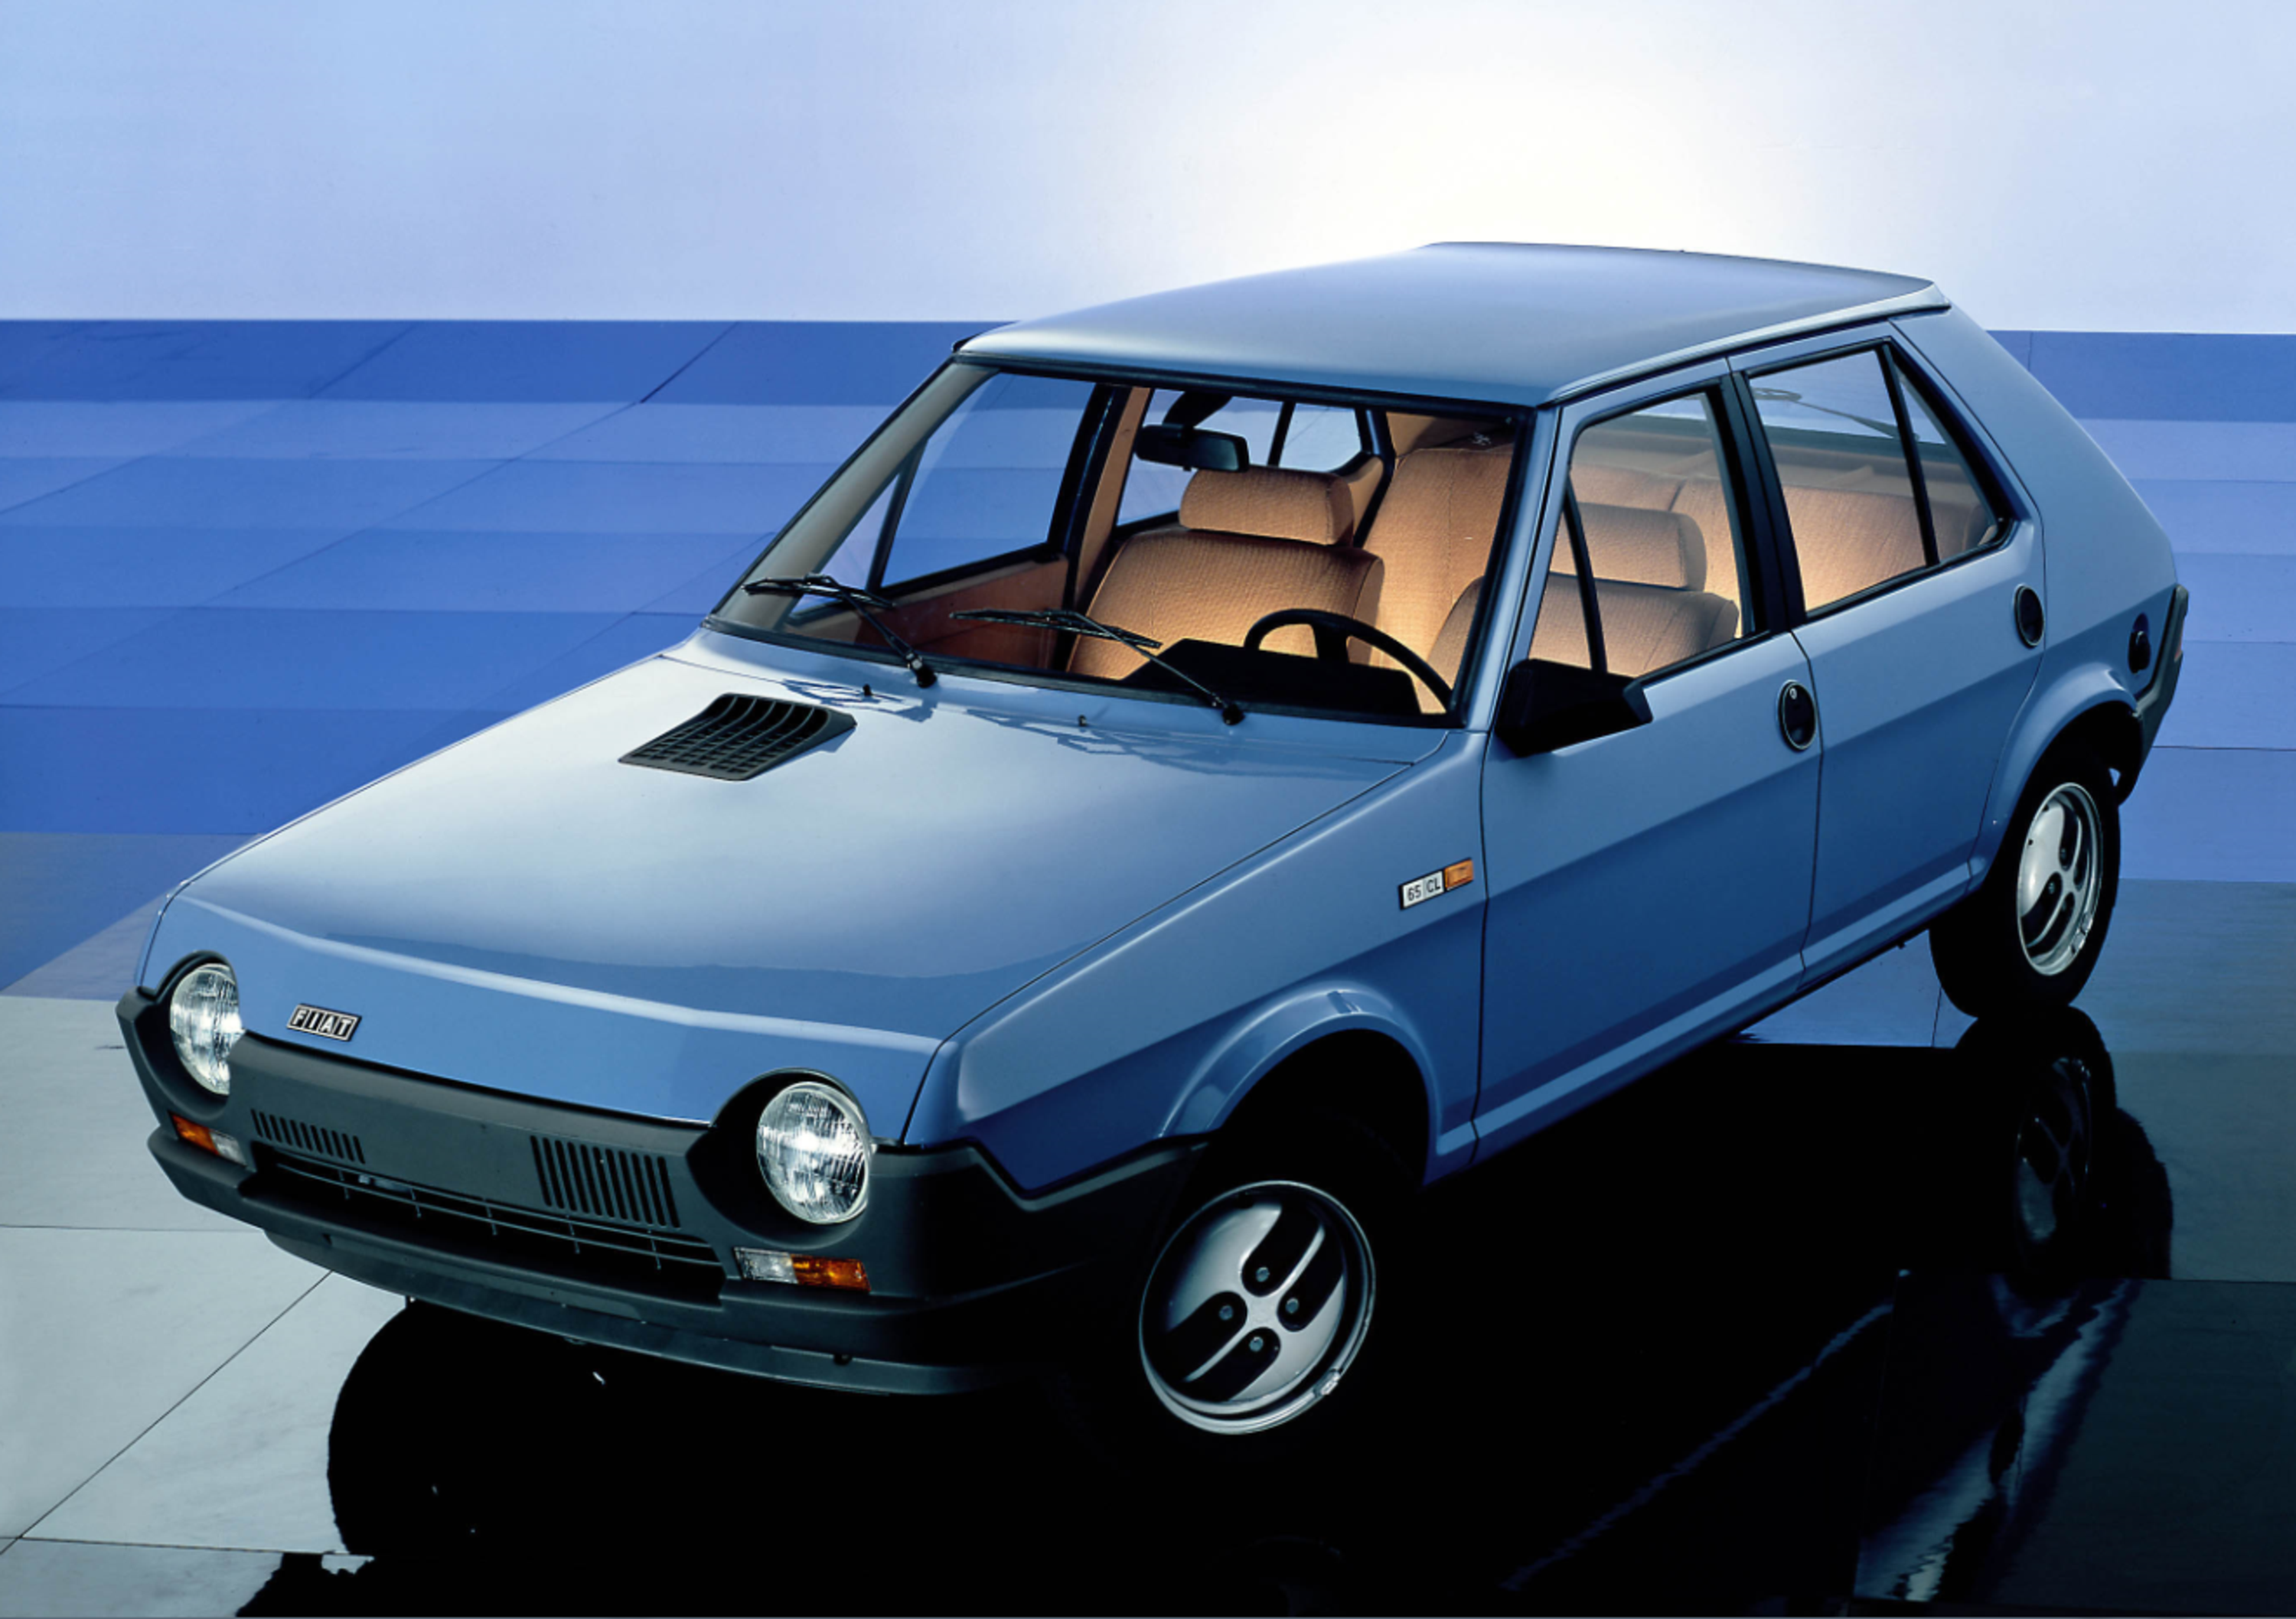 Fiat Ritmo, i 40 anni della berlina dal design innovativo